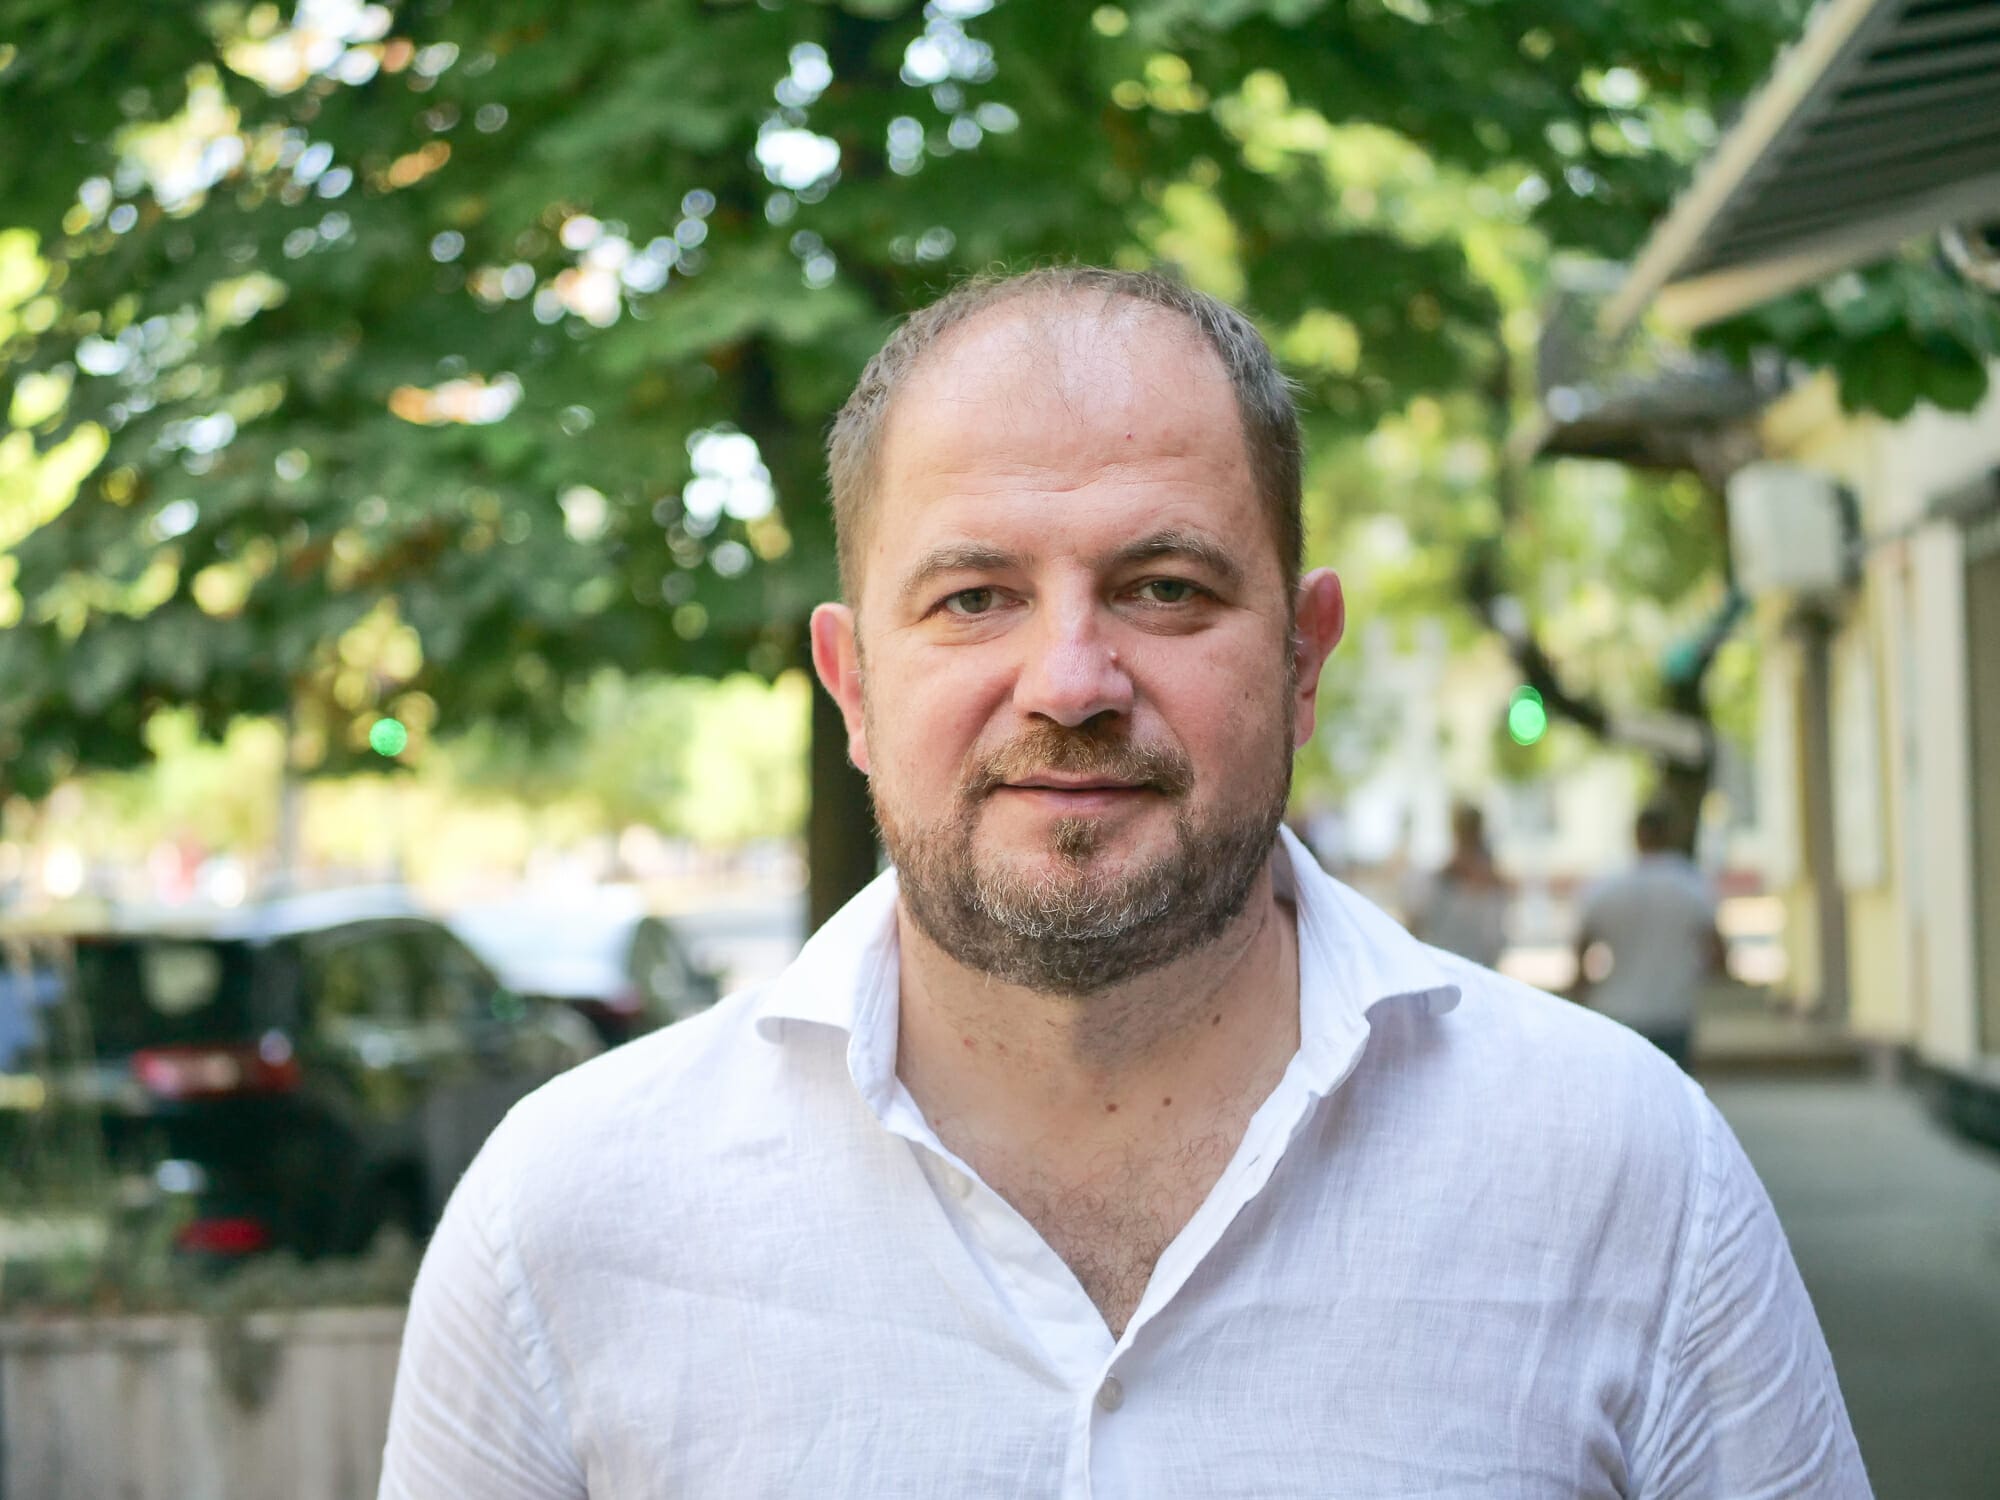 Vadim Tereshchuk (Вадим Терещук) ist ein Lokalpolitiker und Mitglied des Stadtrats von Odesa für die Europäische Solidaritätspartei (Європейська Солідарність - Evropeis'ka Solidarity').